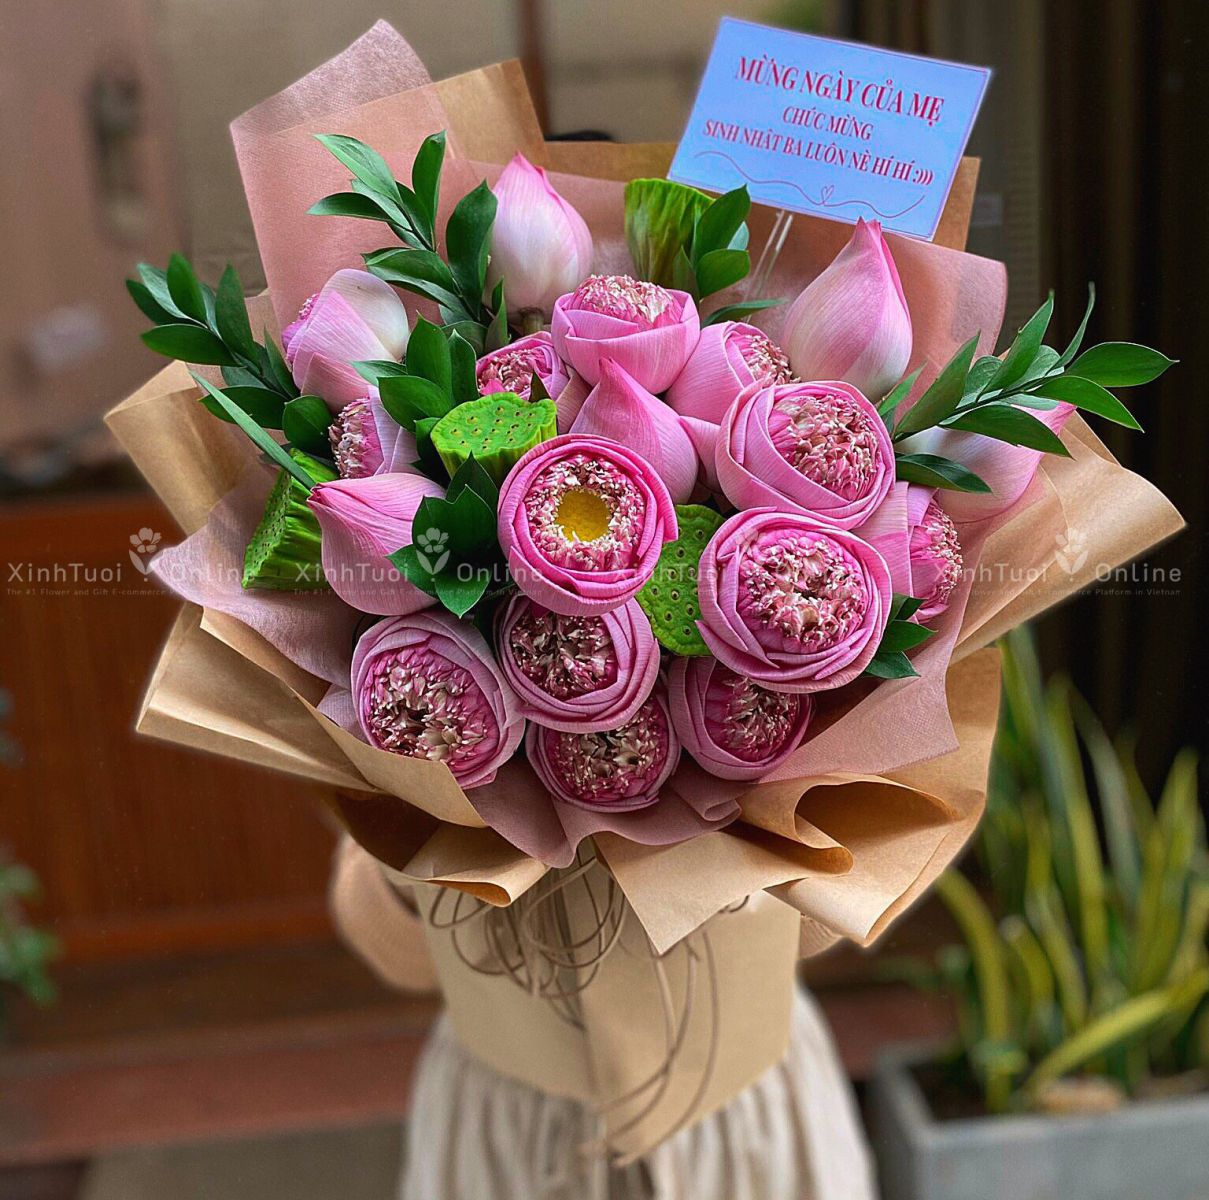 Hoa sen là mẫu hoa sinh nhật best seller, nhất là trong dịp sinh nhật mẹ.